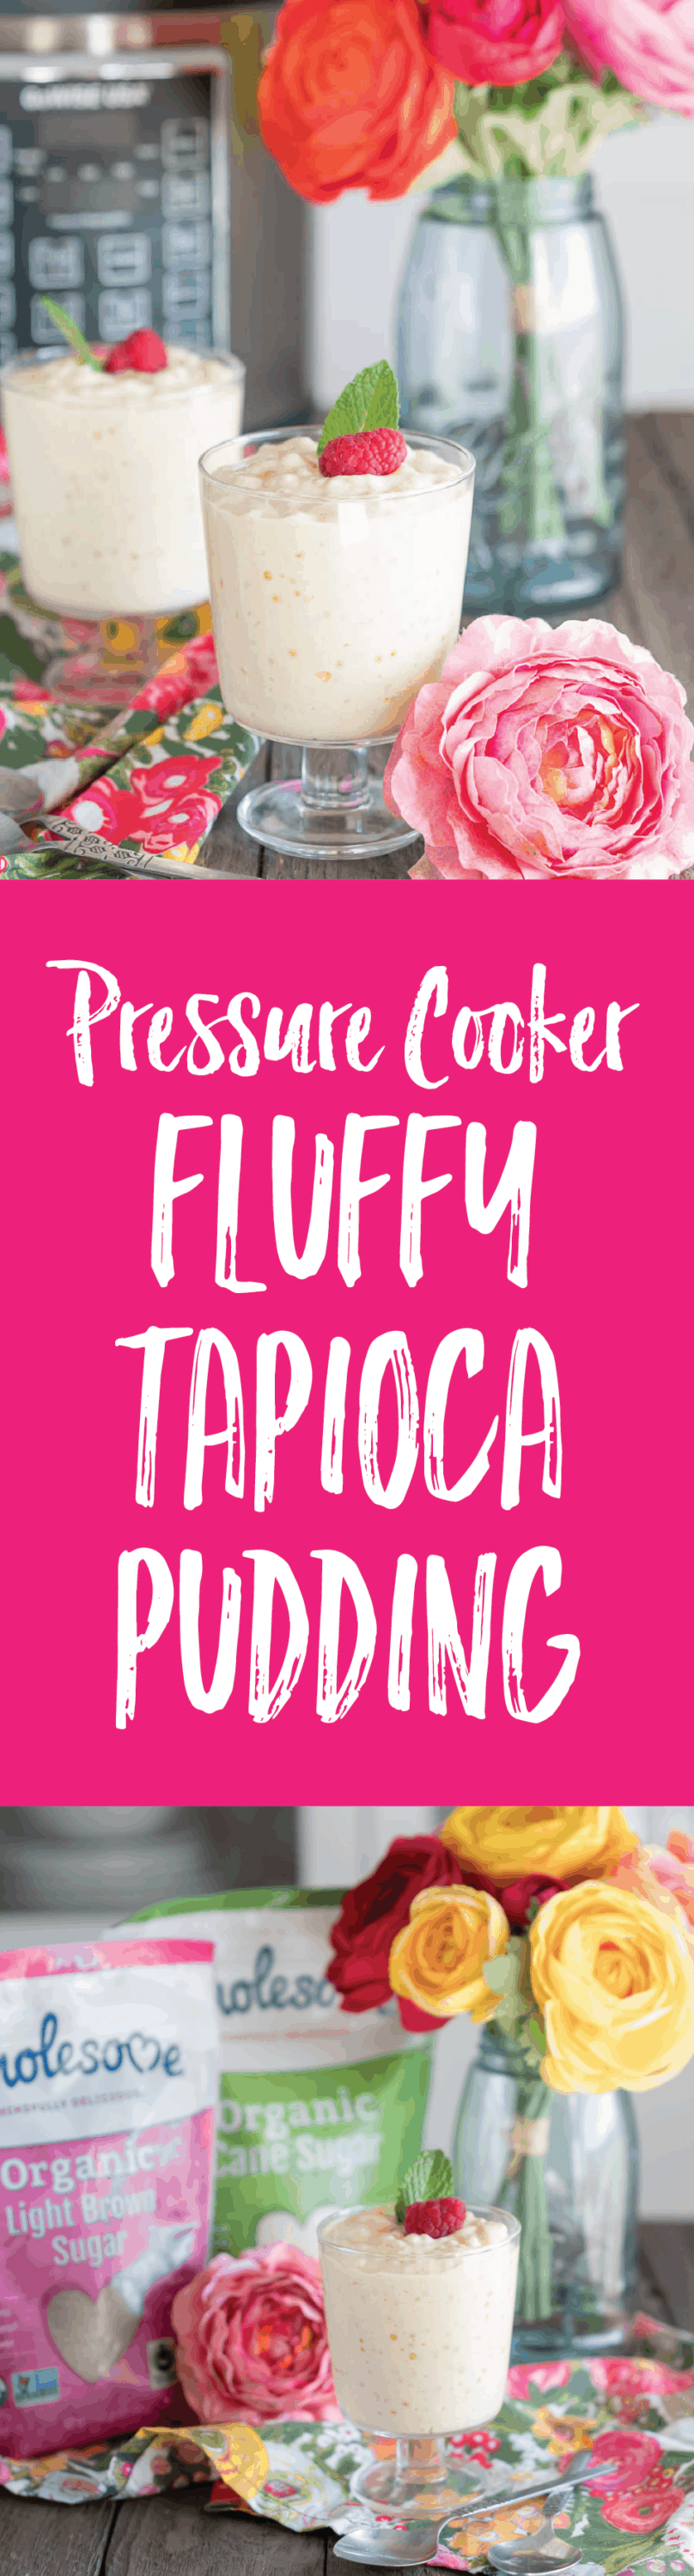 Pressure Cooker Fluffy Tapioca Pudding